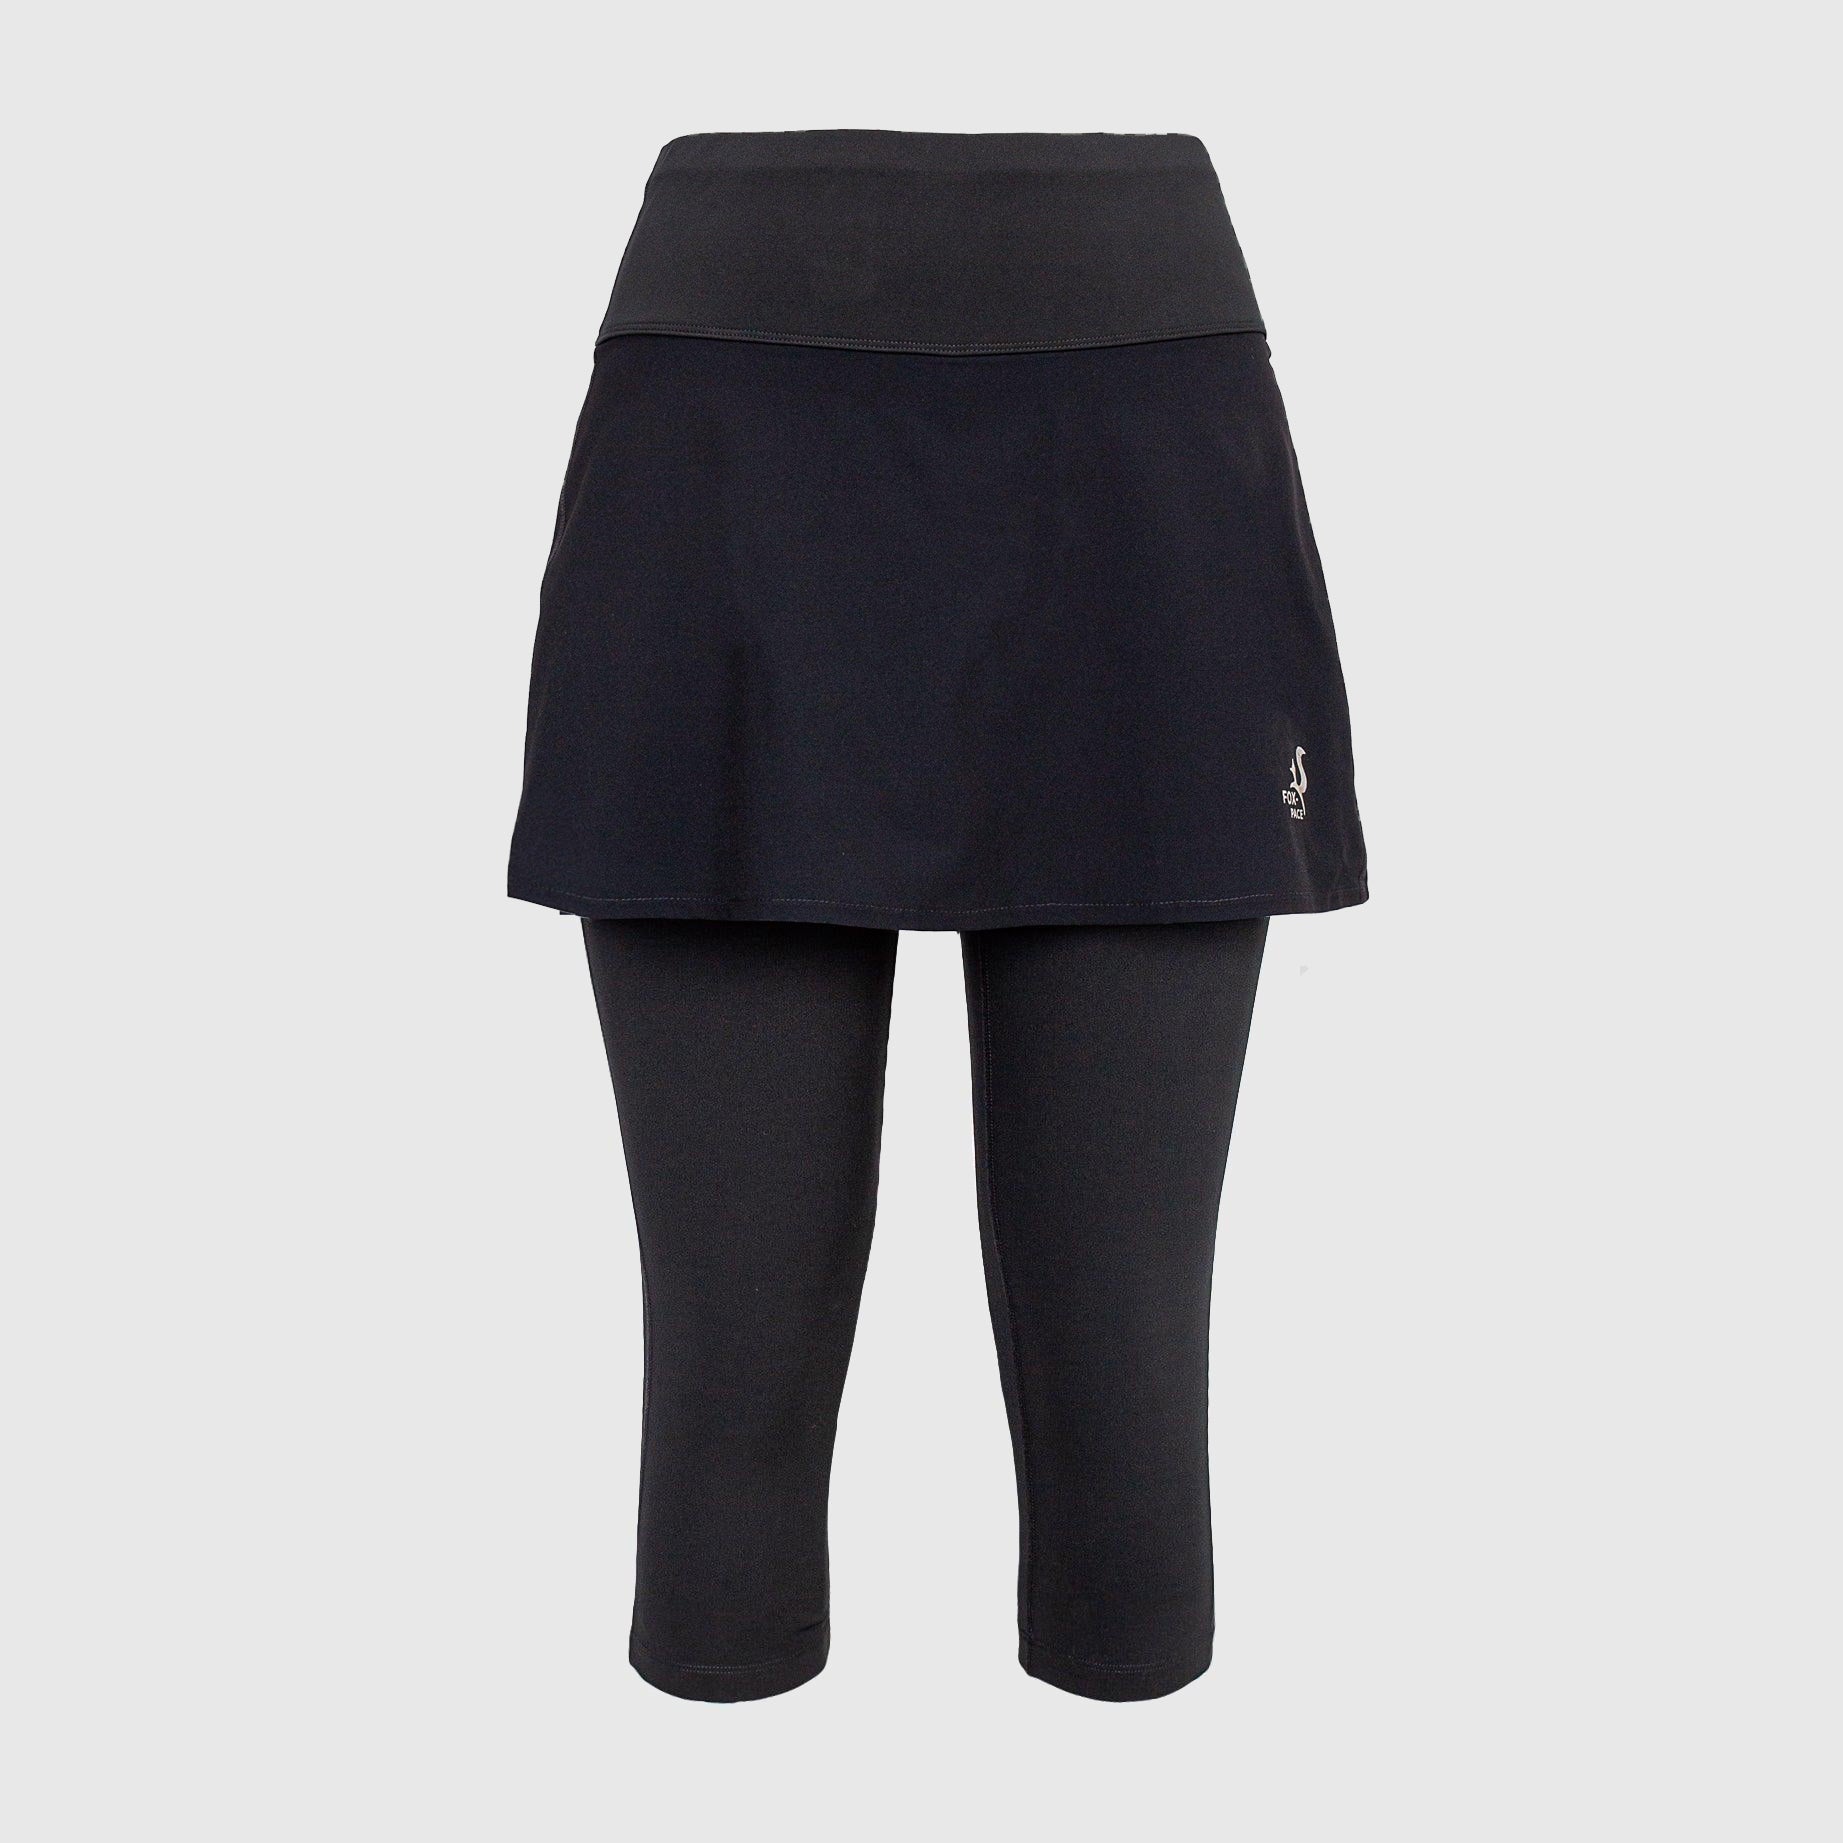 Skirt Sports Lotta Breeze Skirt Attached Capri Leggings Womens S